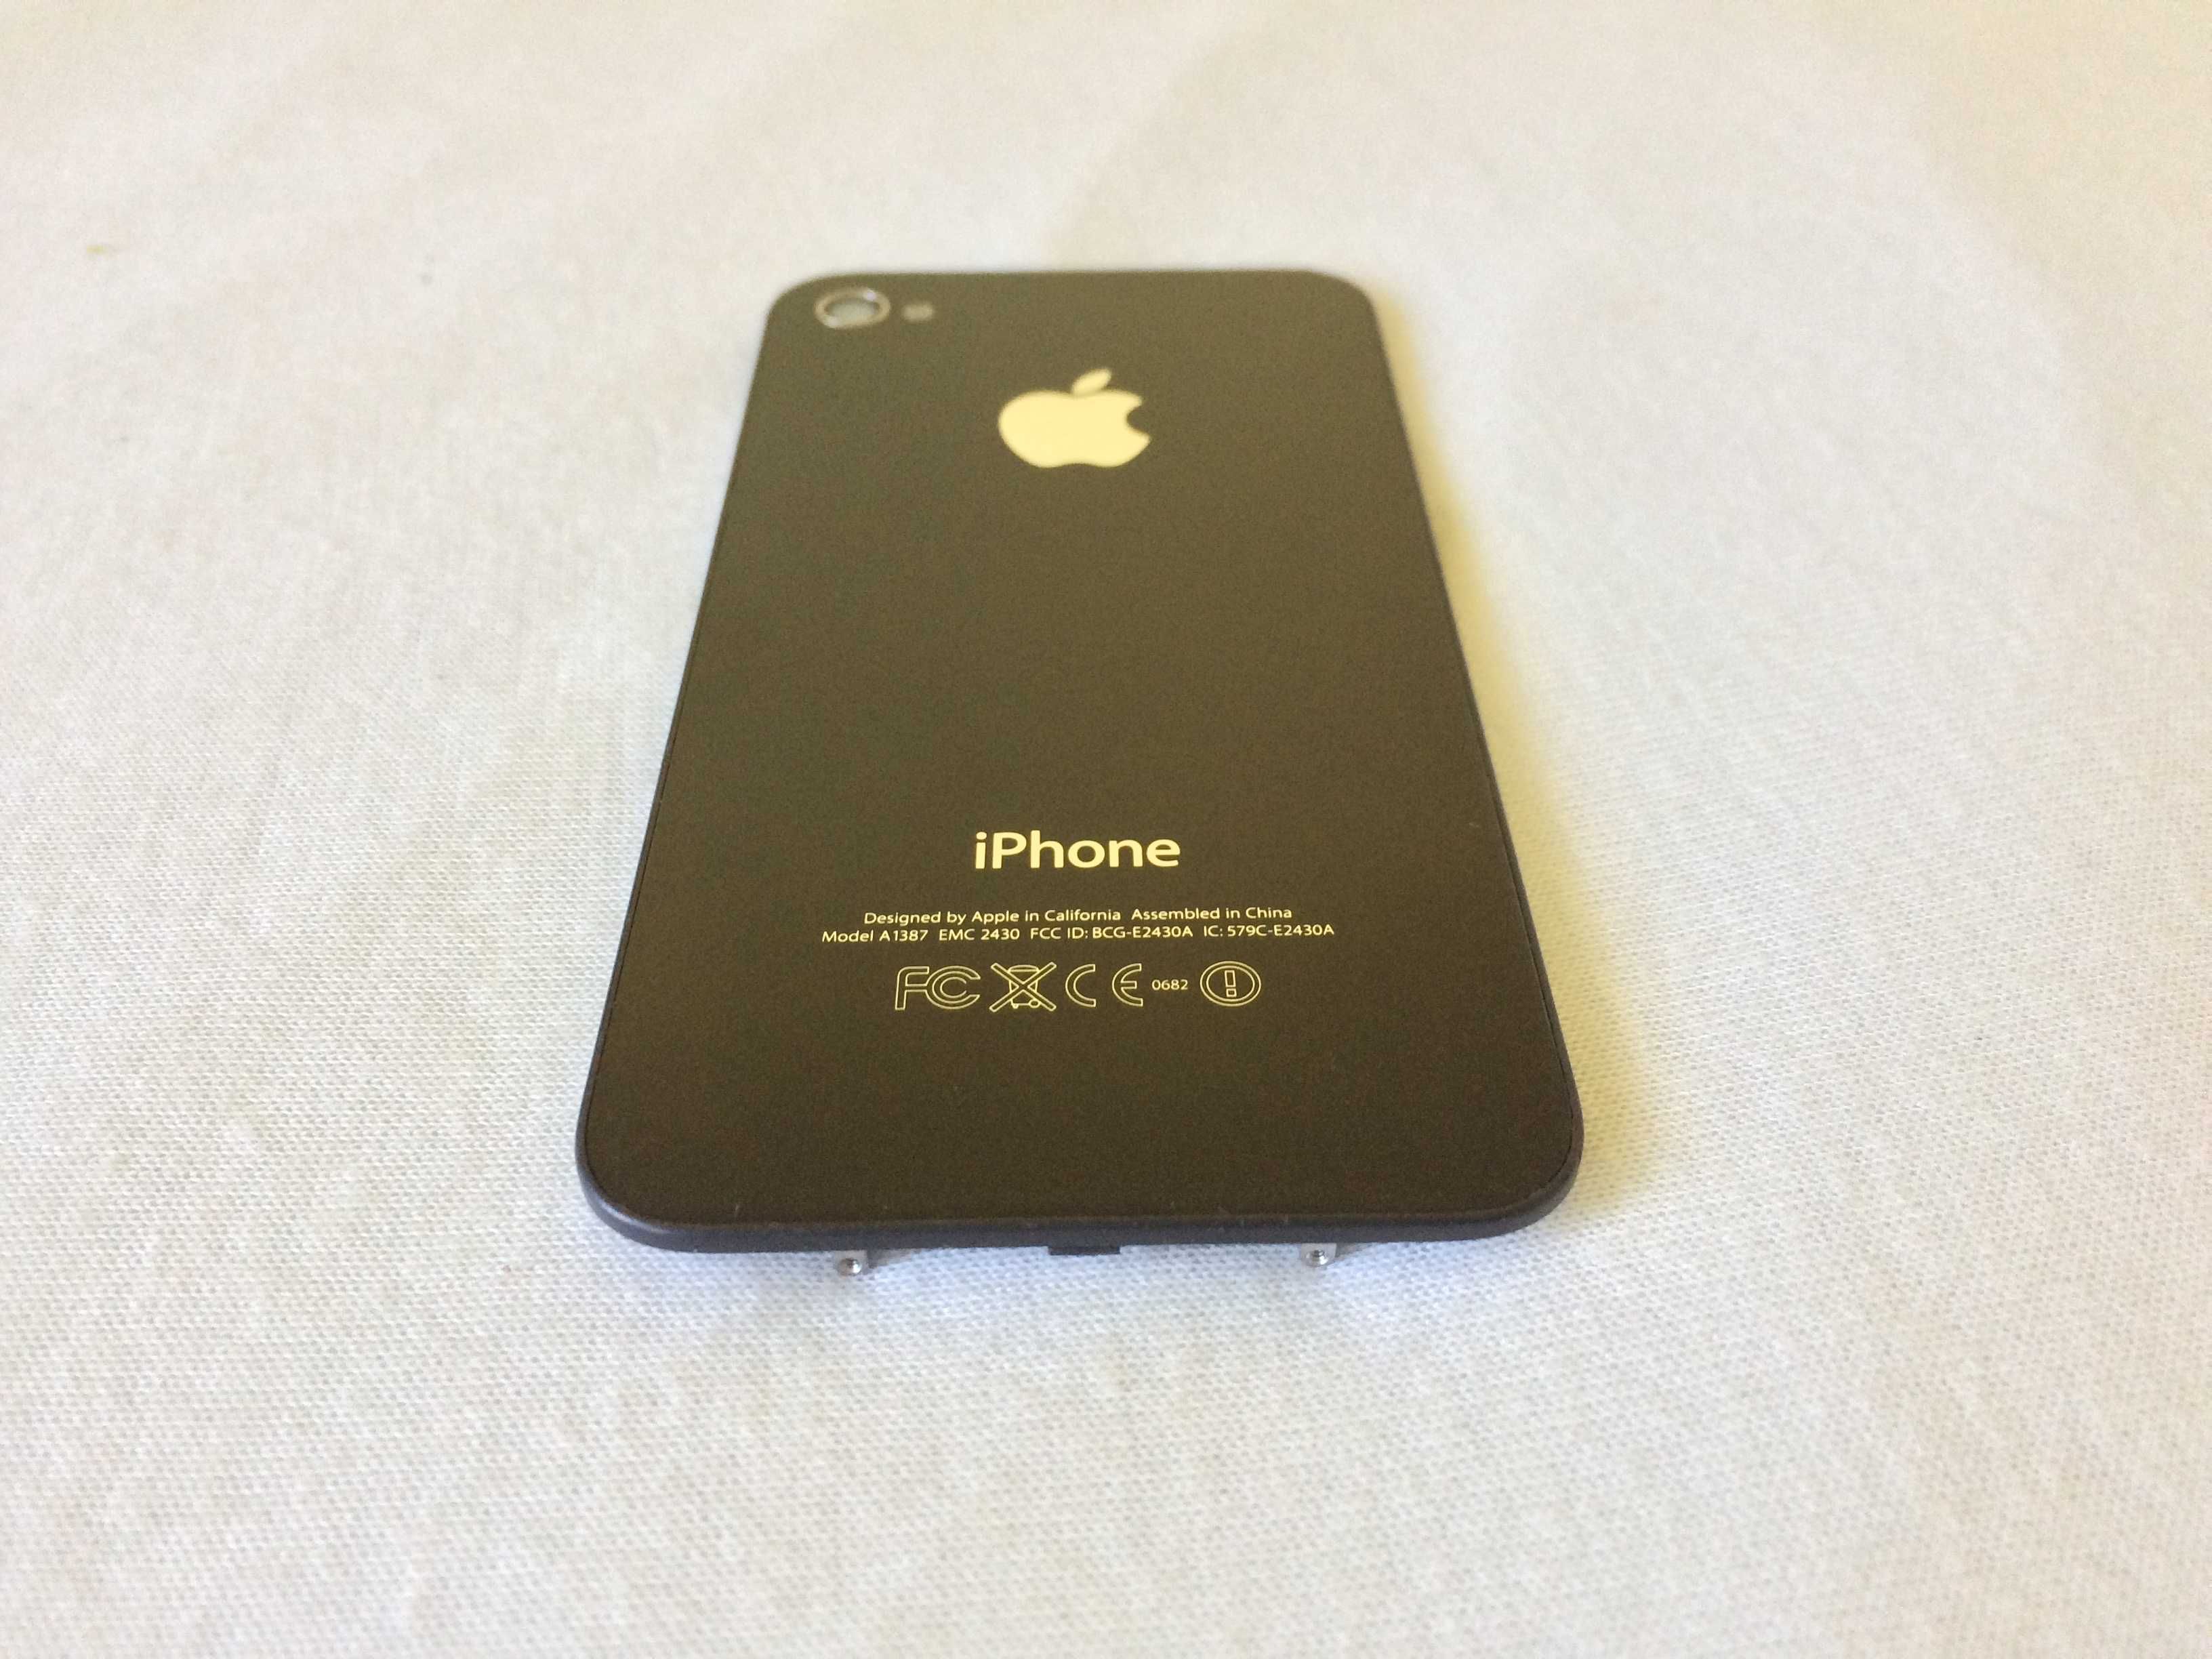 capac spate iphone 4s alb sau negru original